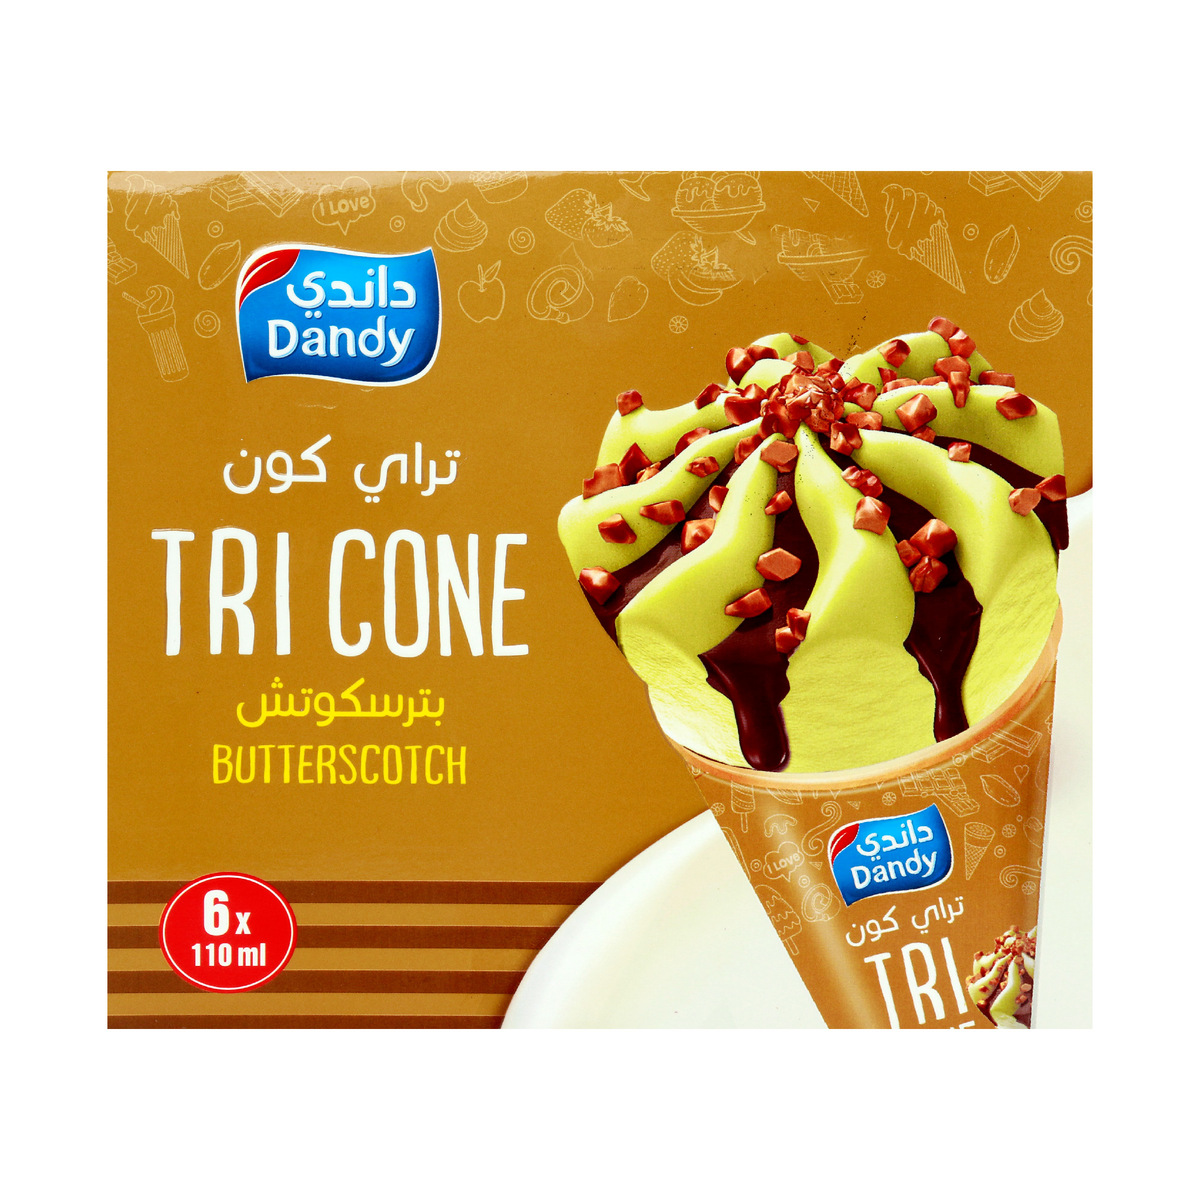 Dandy Ice Cream Tri Cone Butterscotch 6 x 110ml